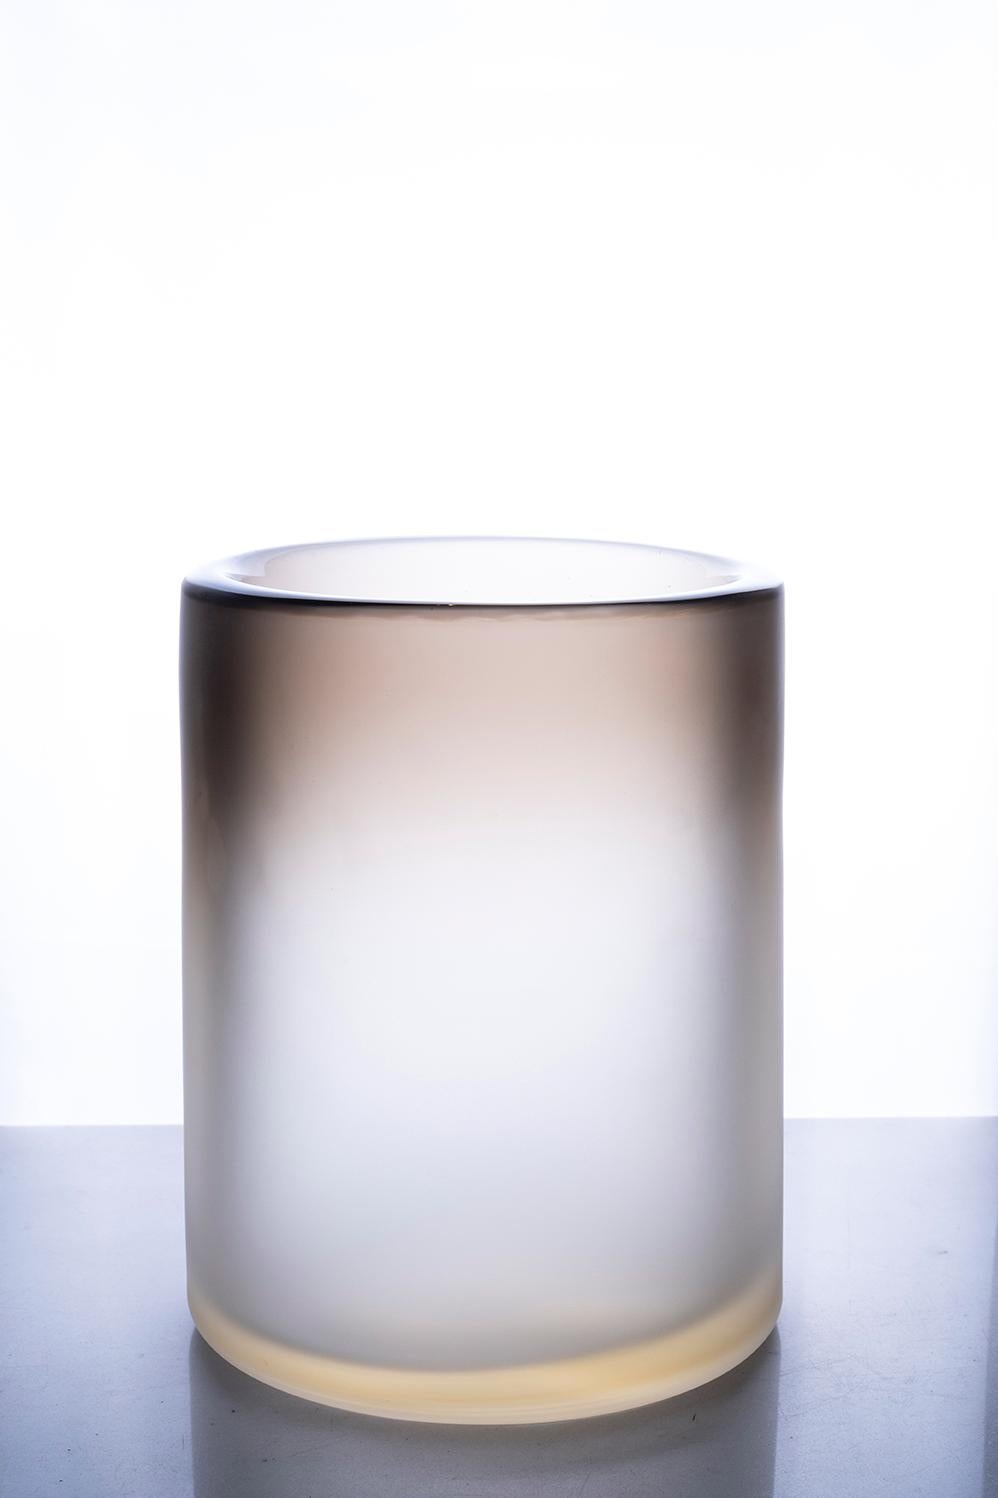 Kleine satinierte Vase Cilindro, Muranoglas, von Federico Peri, 21. Jahrhundert.
Cilindro ist eine Vase aus der Essentials-Kollektion, die von Federico Peri für Purho im Frühjahr 2021 entworfen wurde.
Cilindro wird aus einem ovalen und konischen